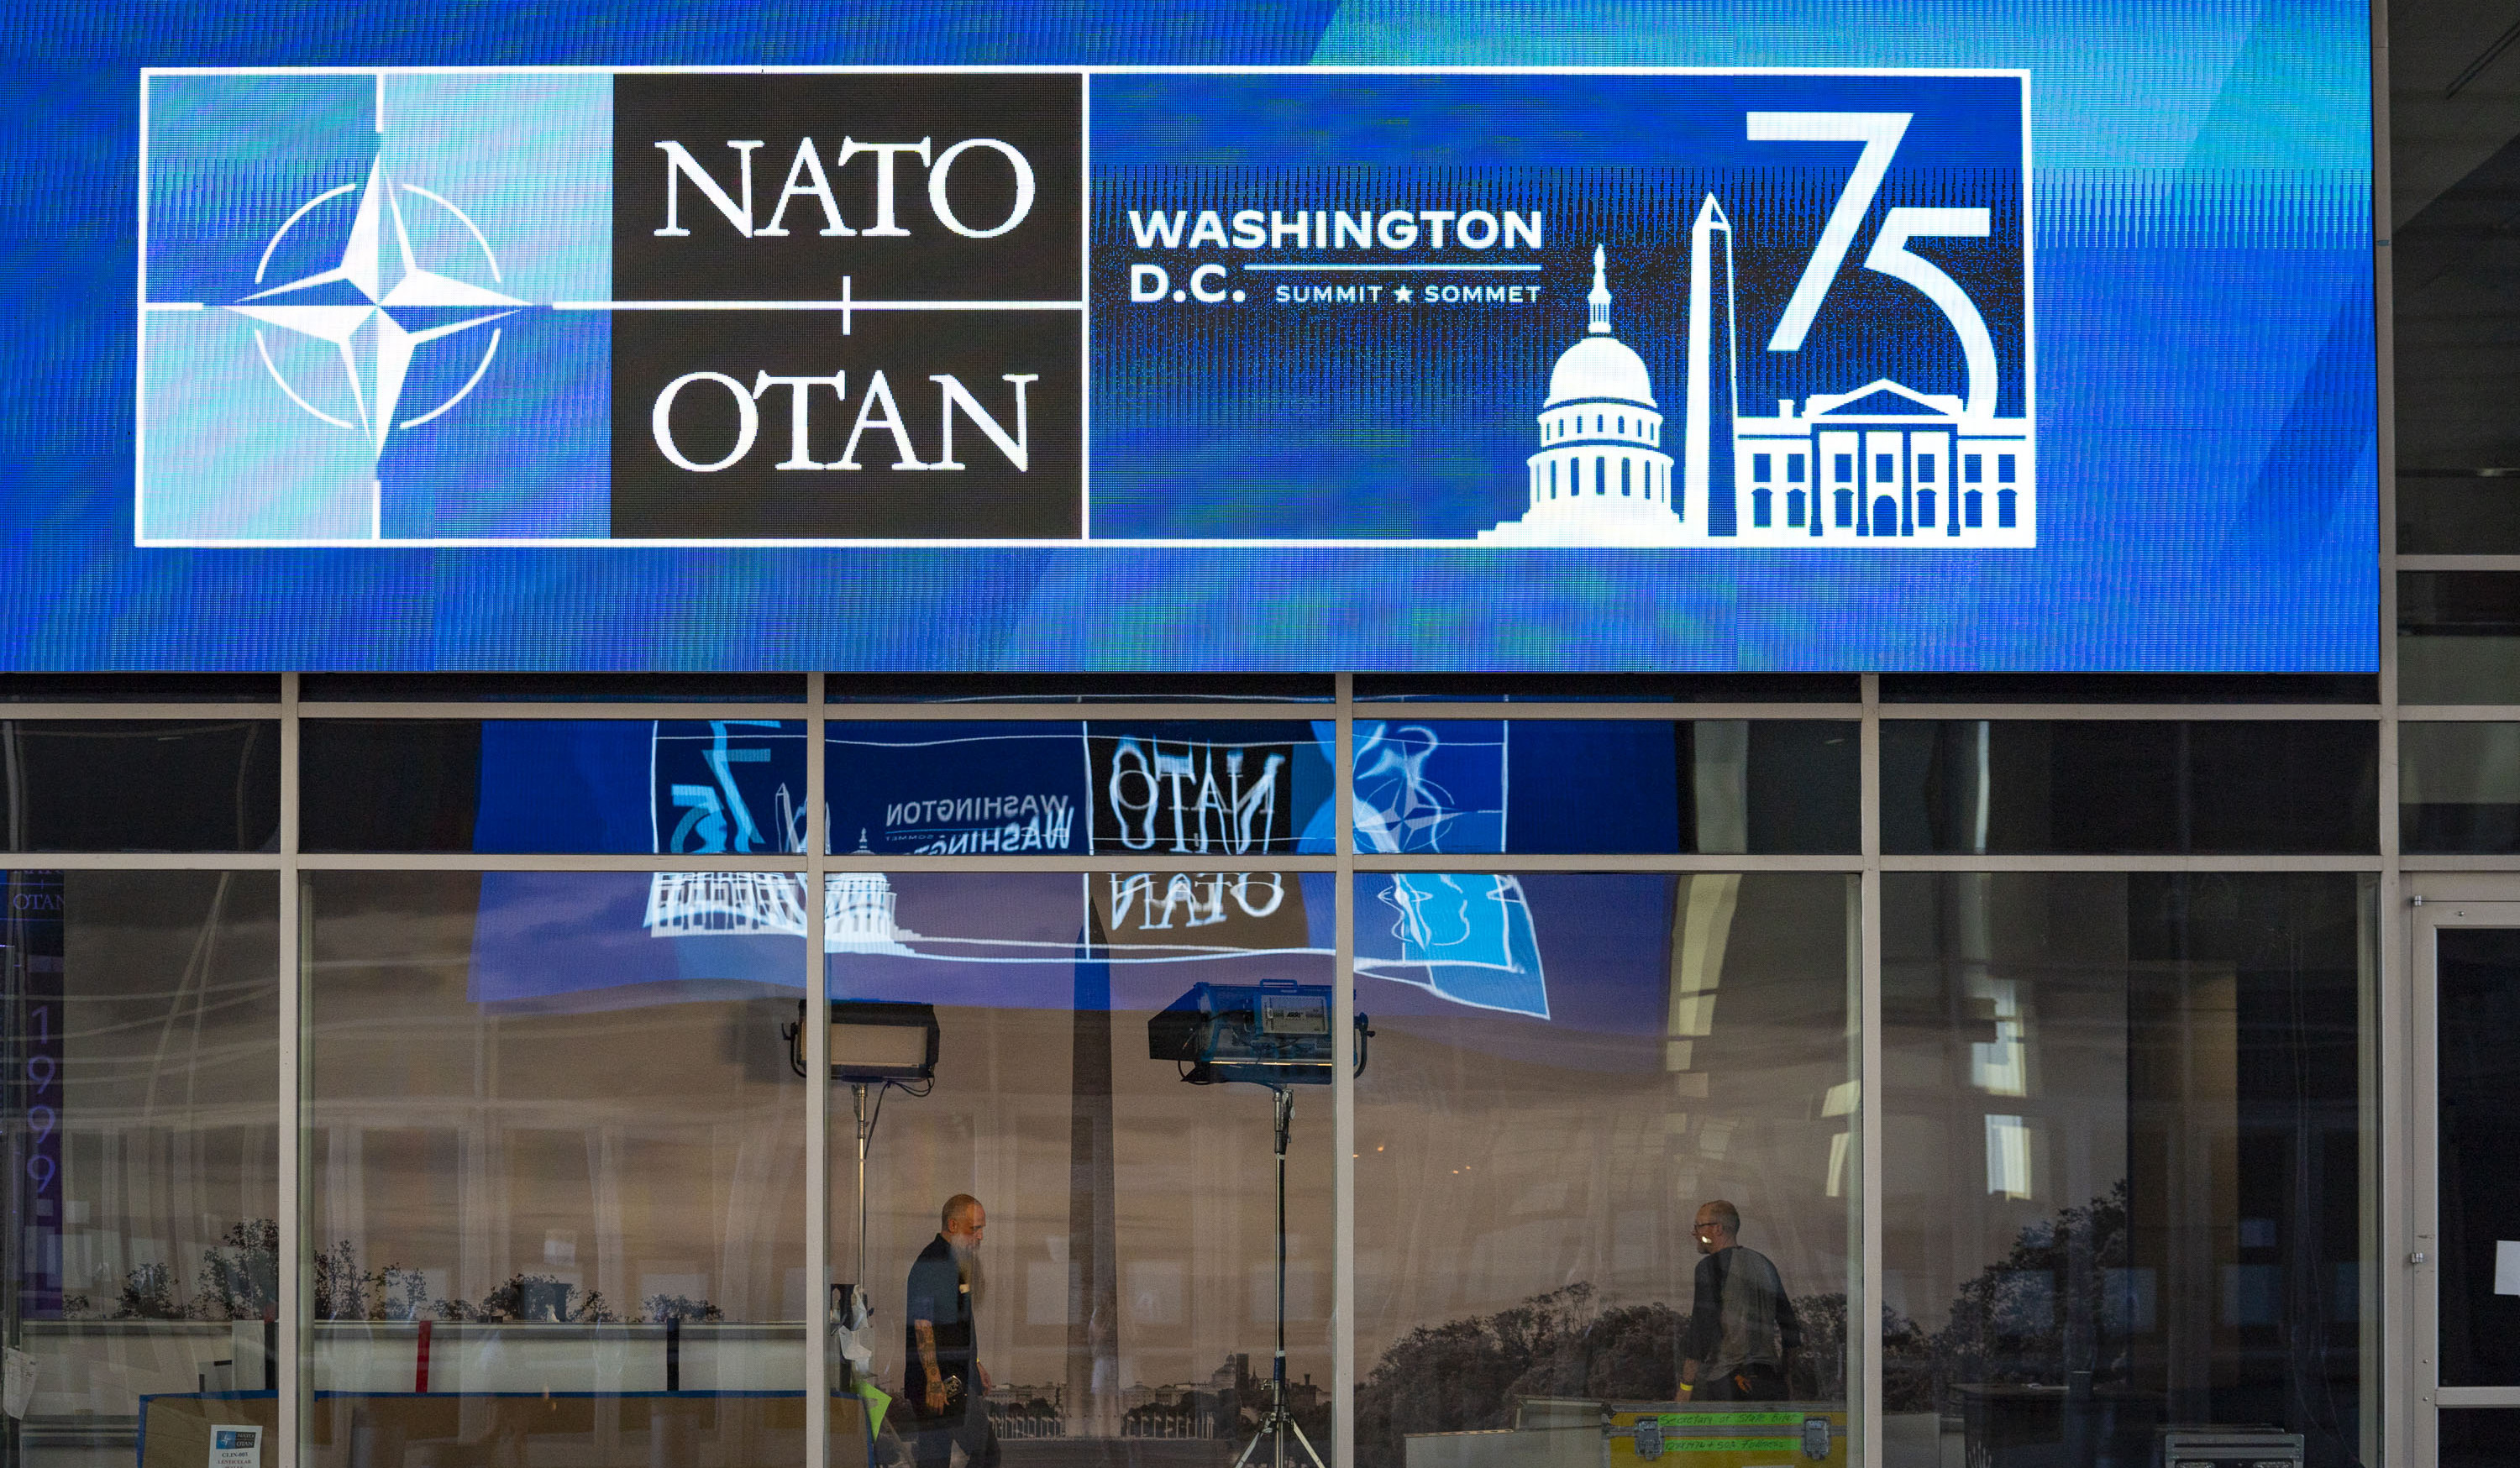 Джейхун Байрамов отбыл в Вашингтон для участия в саммите НАТО